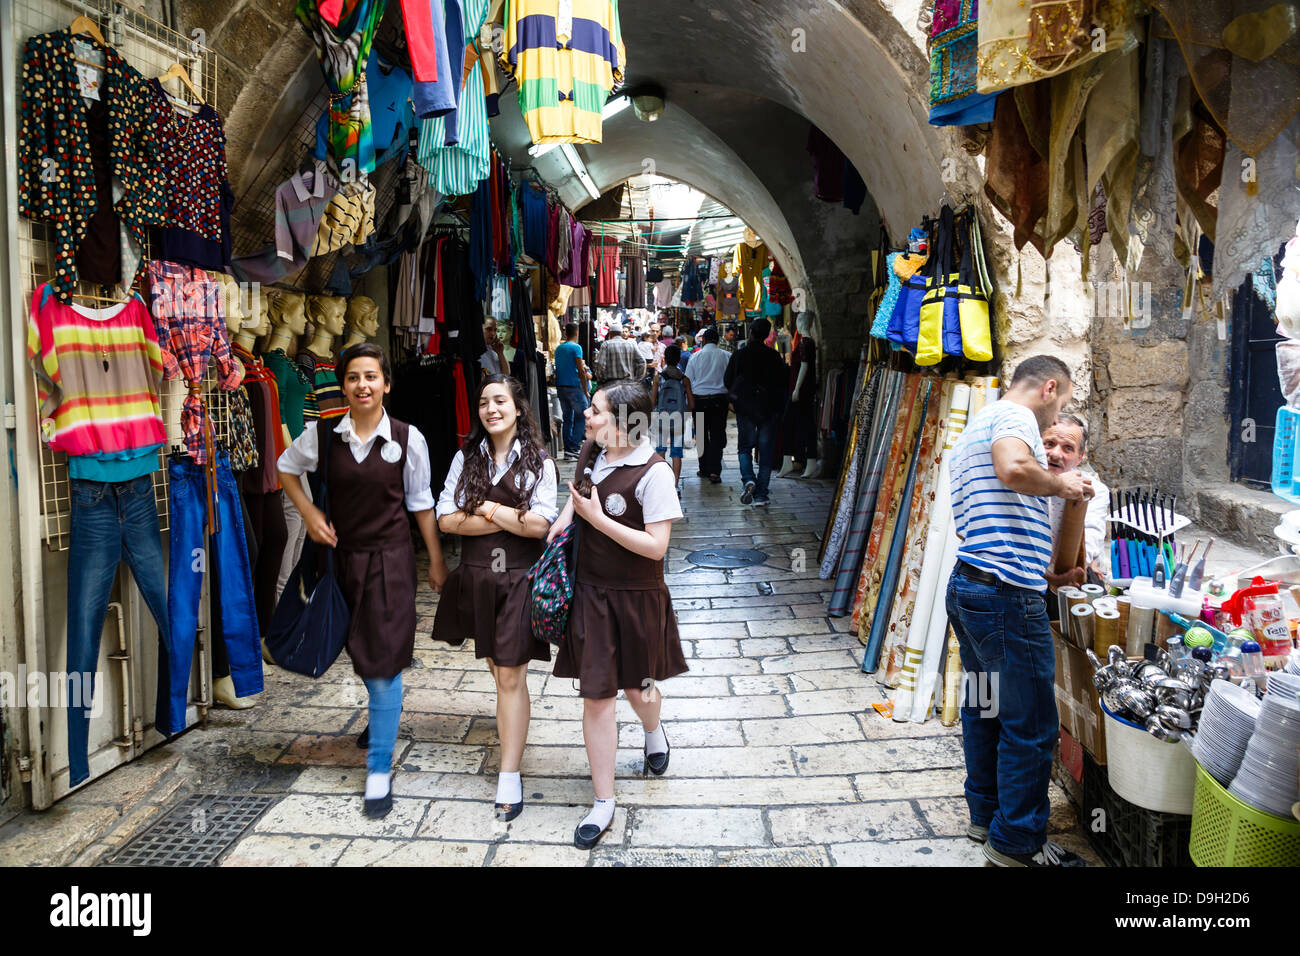 Arabischen Souk, Markthalle, im muslimischen Viertel in der Altstadt, Jerusalem, Israel. Stockfoto